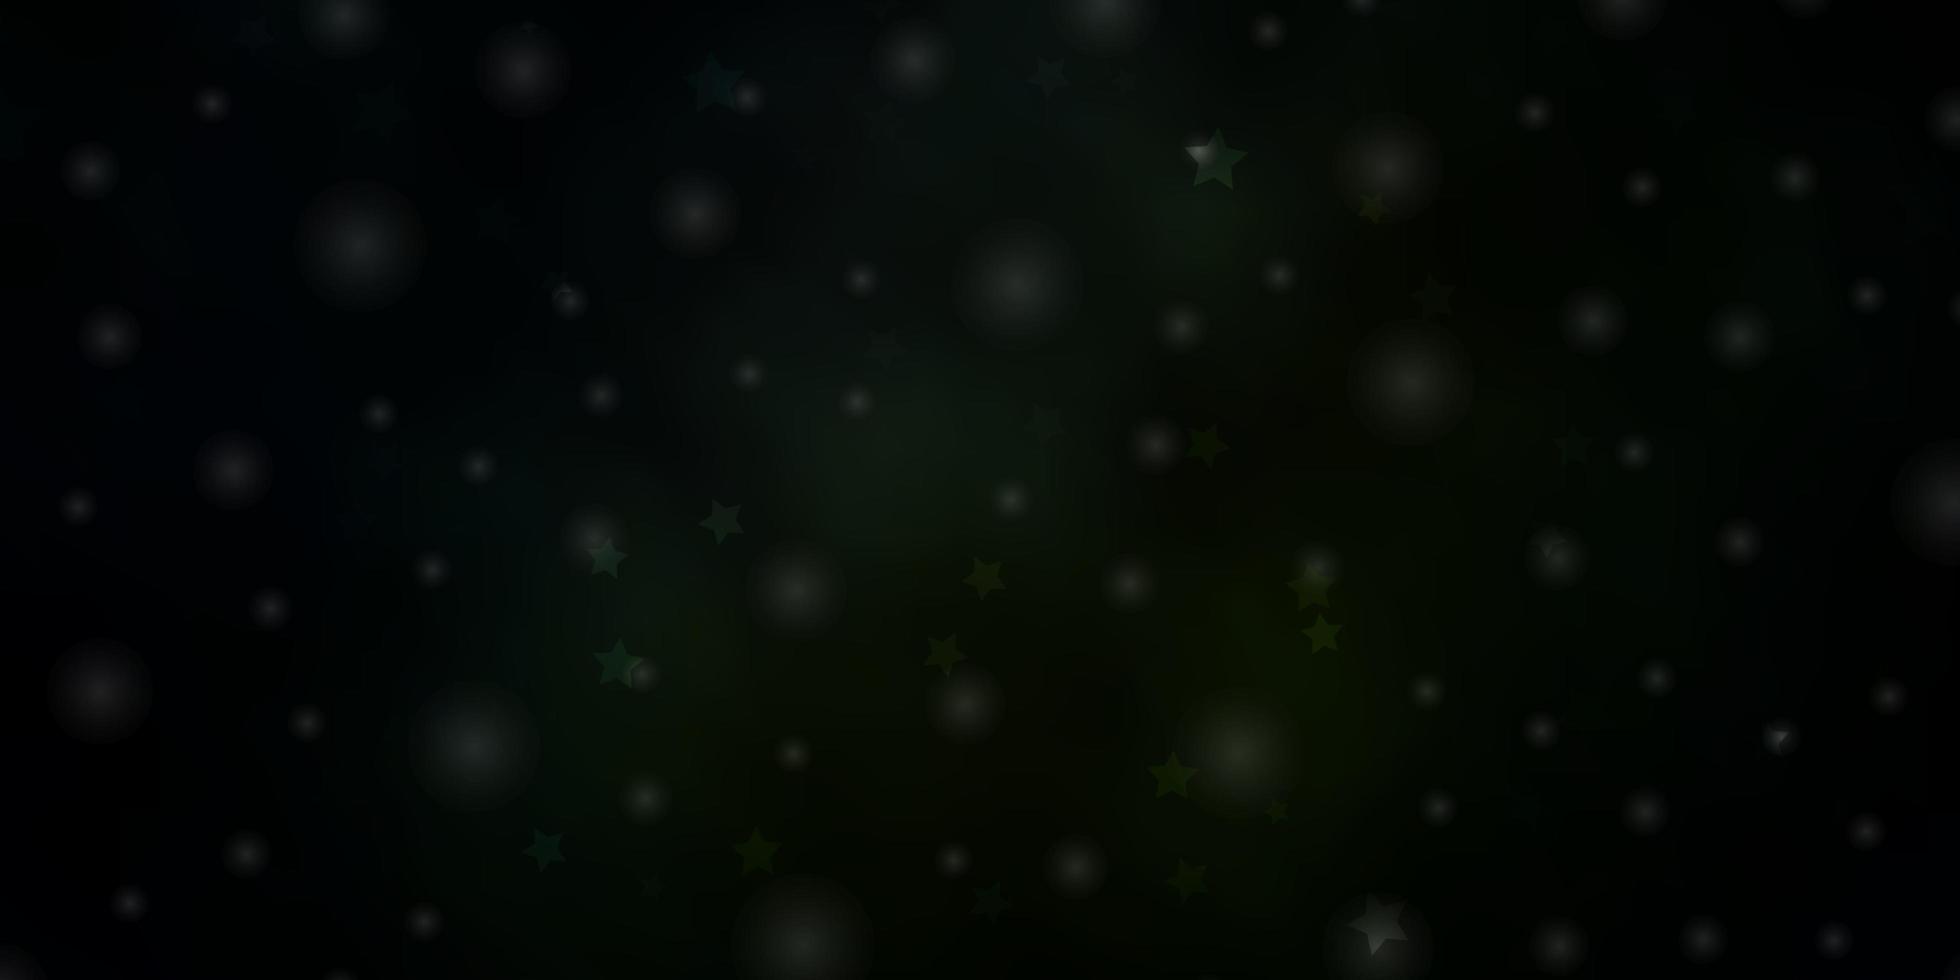 Plantilla de vector verde oscuro con estrellas de neón ilustración colorida en estilo abstracto con patrón de estrellas degradado para folletos de anuncios de año nuevo